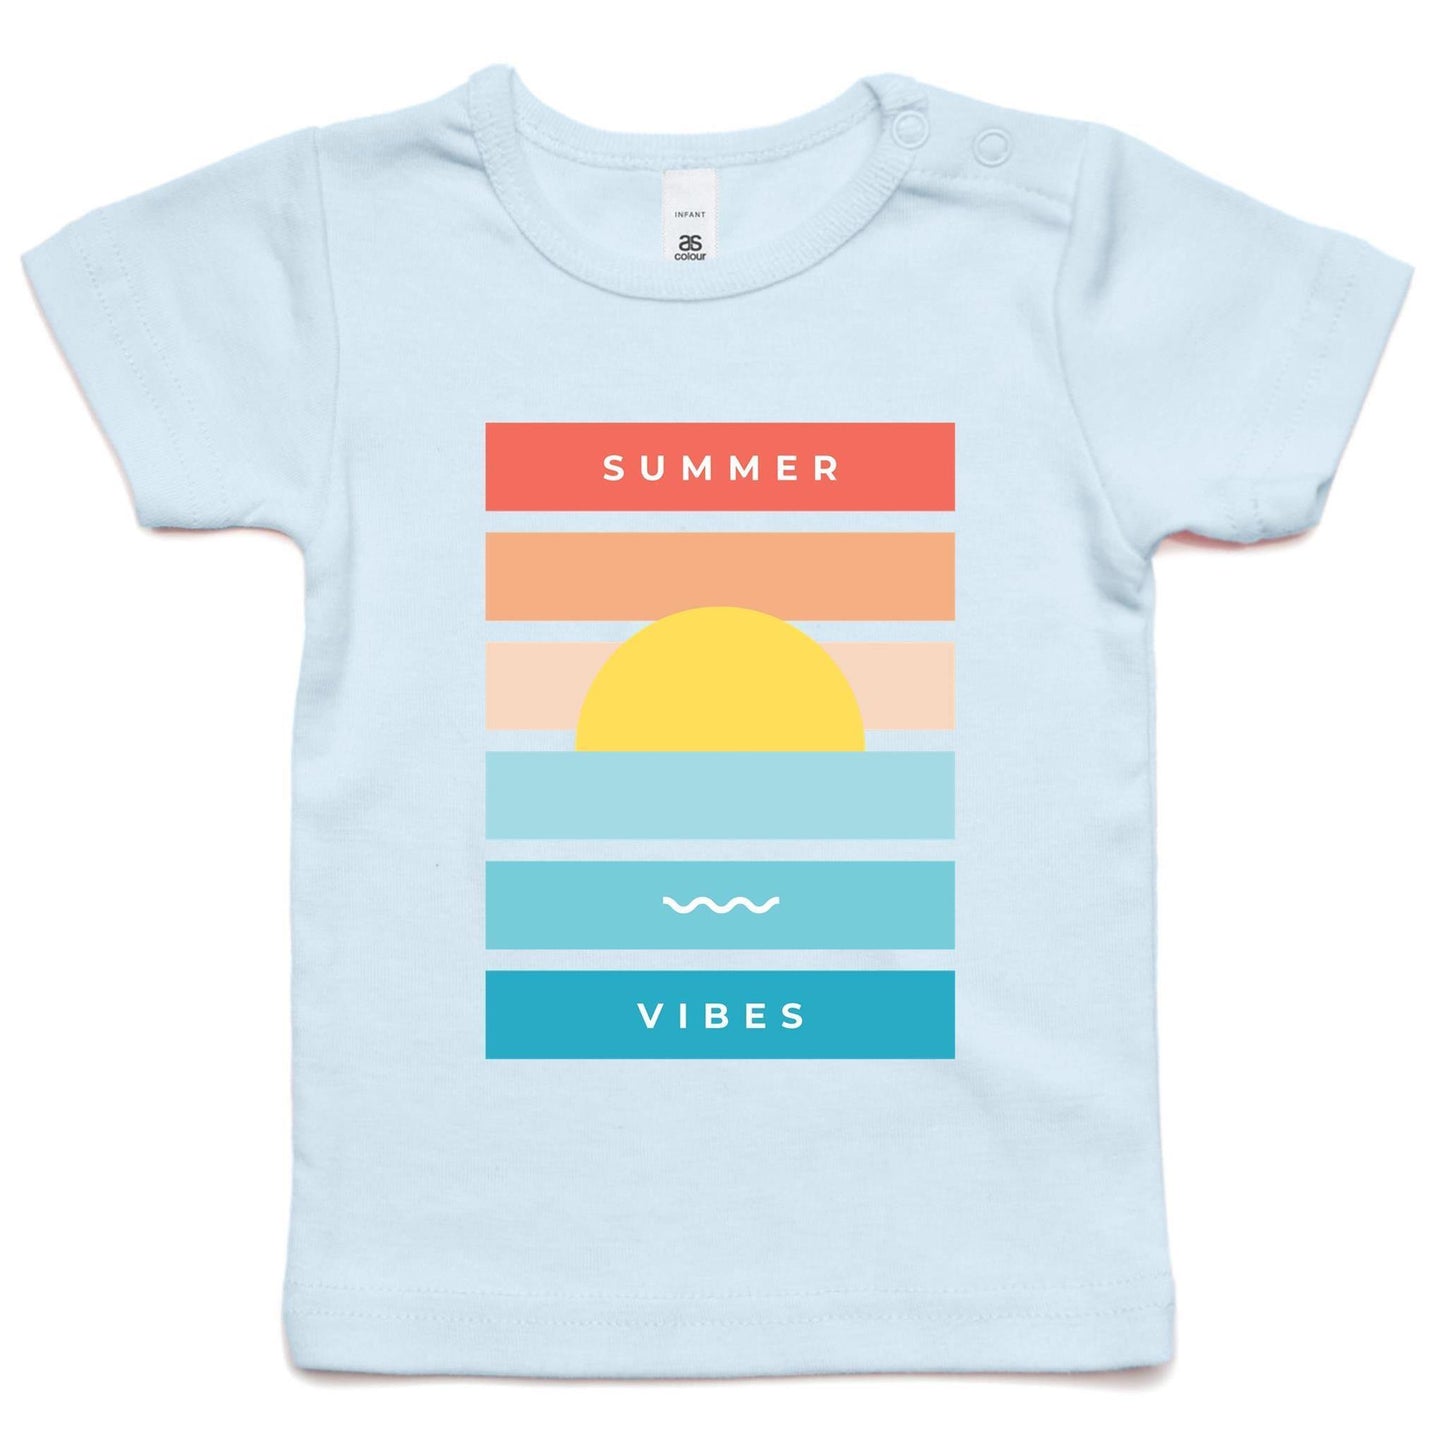 Summer Vibes - Baby T-shirt Powder Blue Baby T-shirt kids Summer